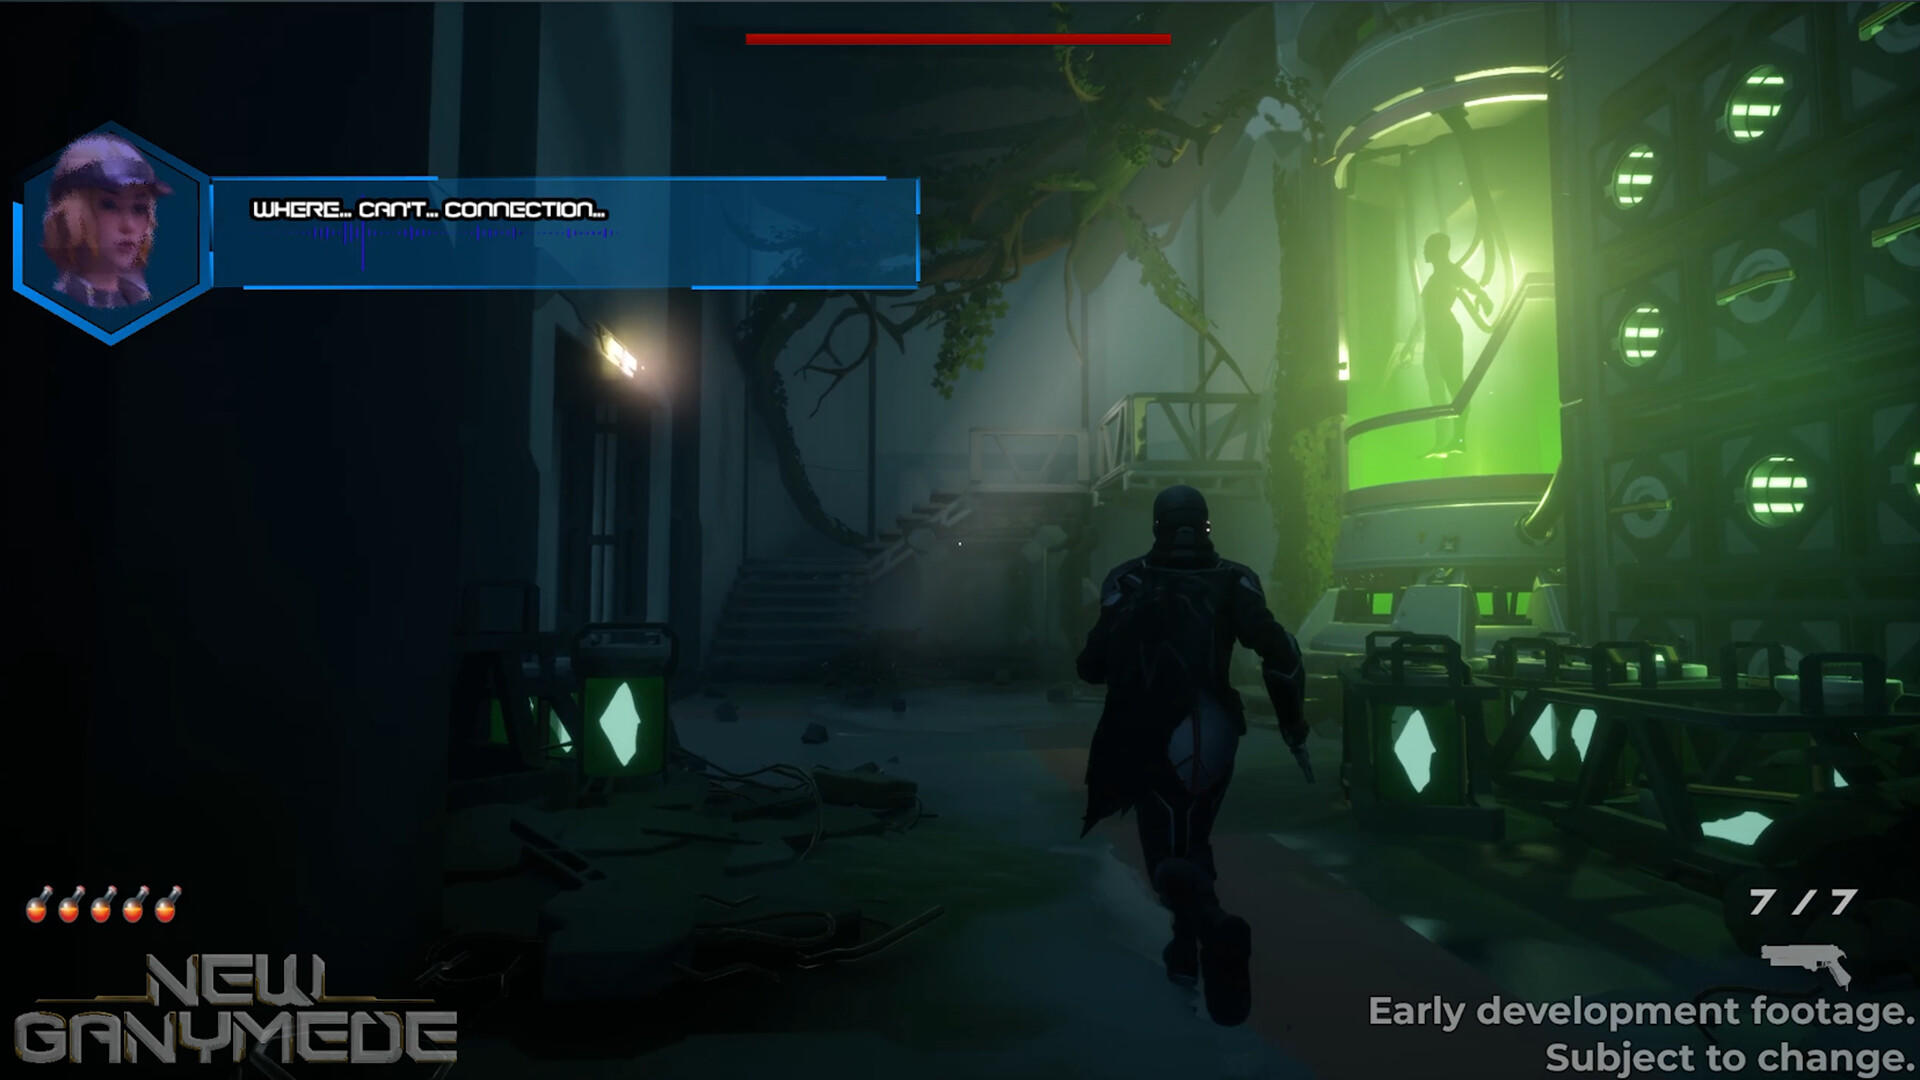 New Ganymede screenshot game